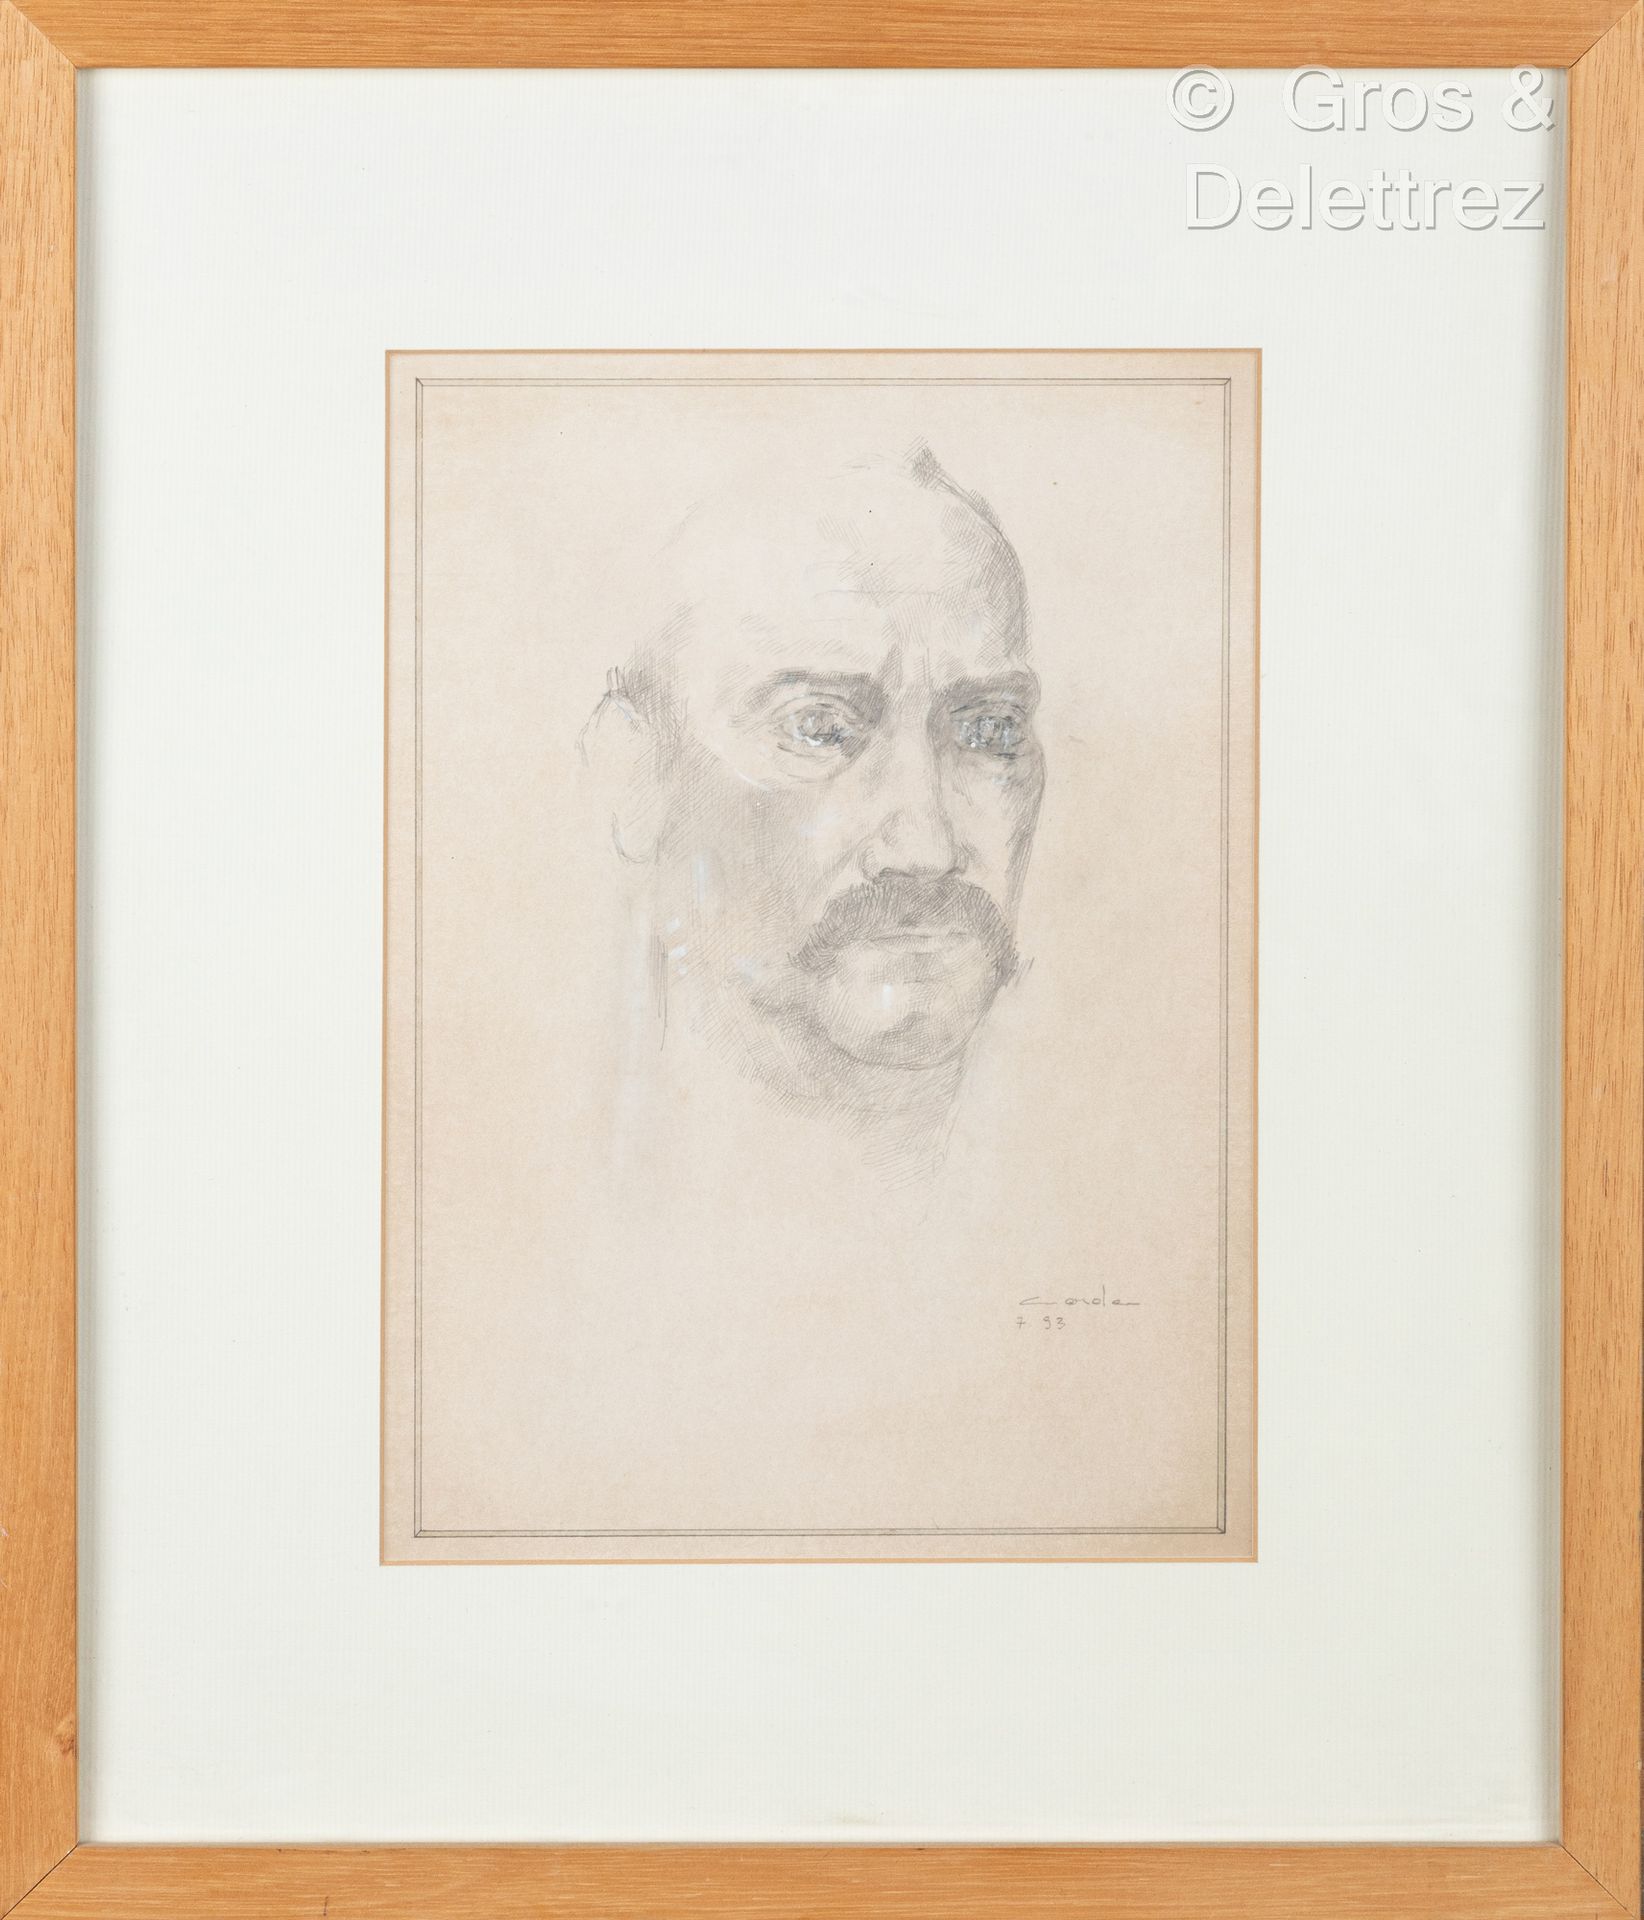 Null (E) Mauro CORDA (geboren 1960)

Porträt eines Mannes mit Schnurrbart

Bleis&hellip;